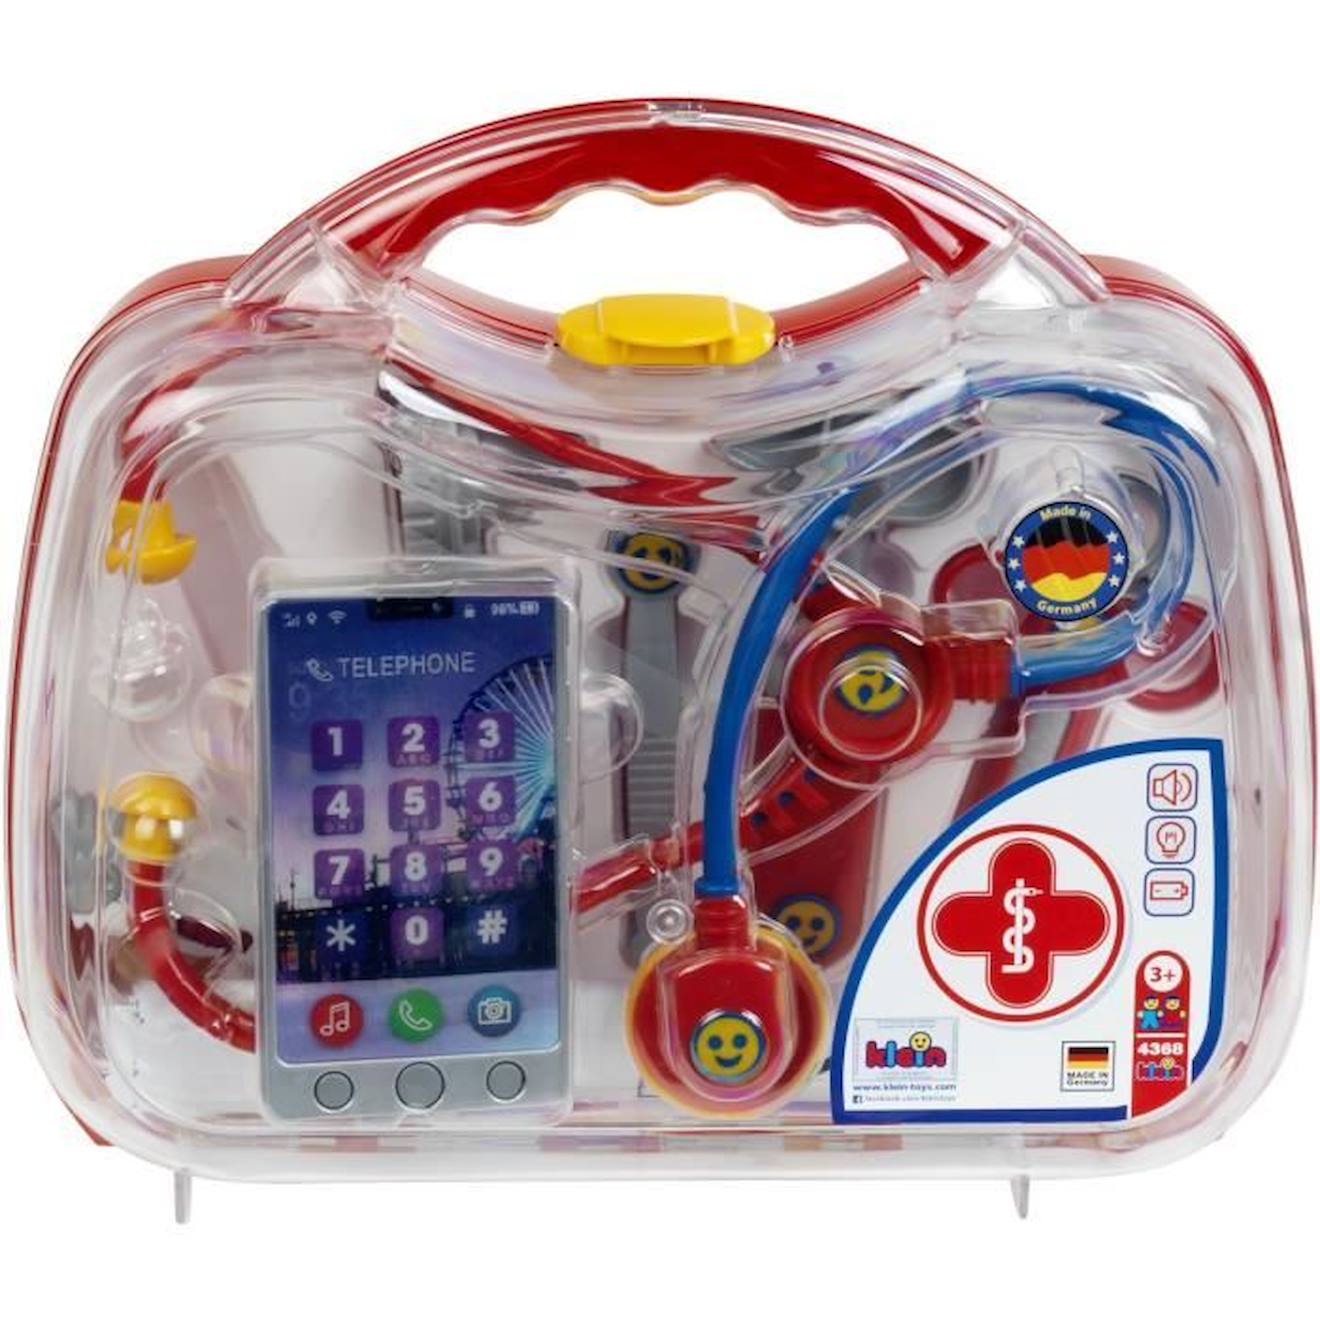 Mallette docteur avec smartphone et thermomètre électroniques - KLEIN -  4368 - Mixte - 3 ans - Rouge rouge - Klein